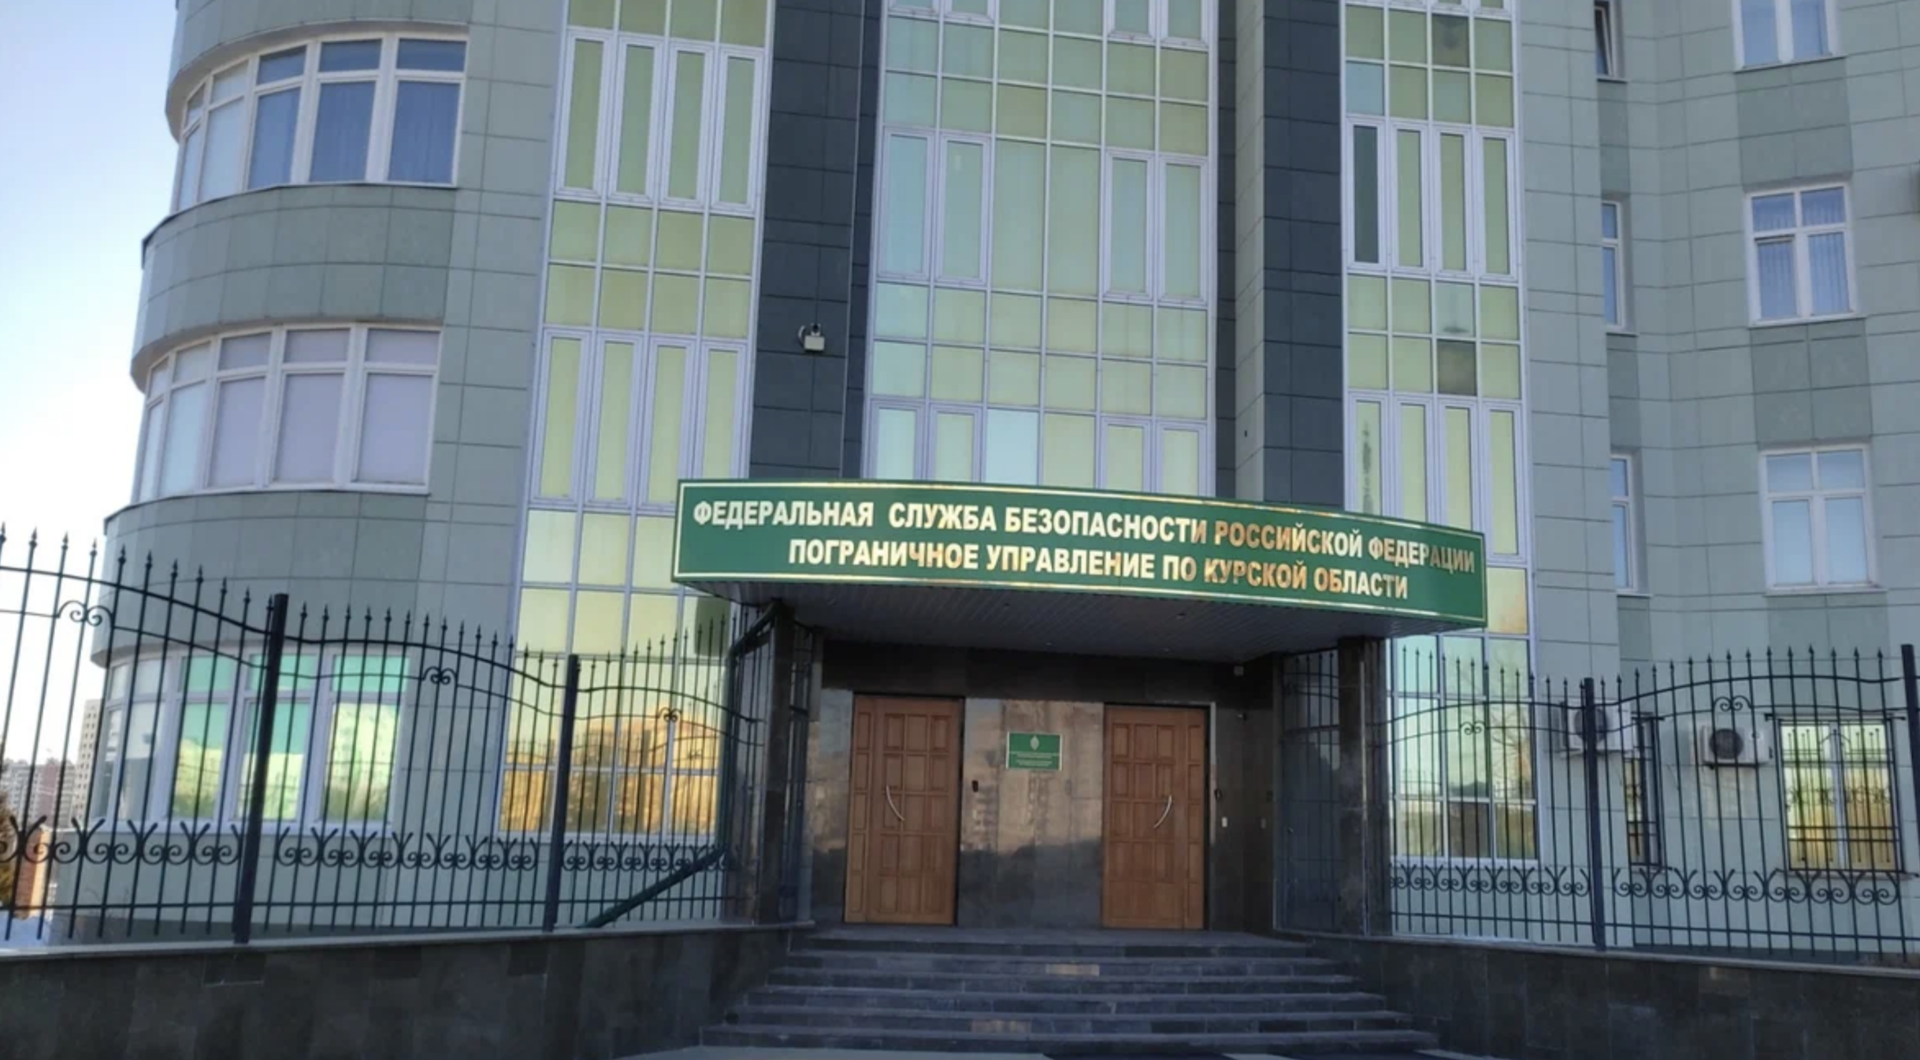 Украинские беспилотники обстреляли пограничное управление ФСБ по Курской области